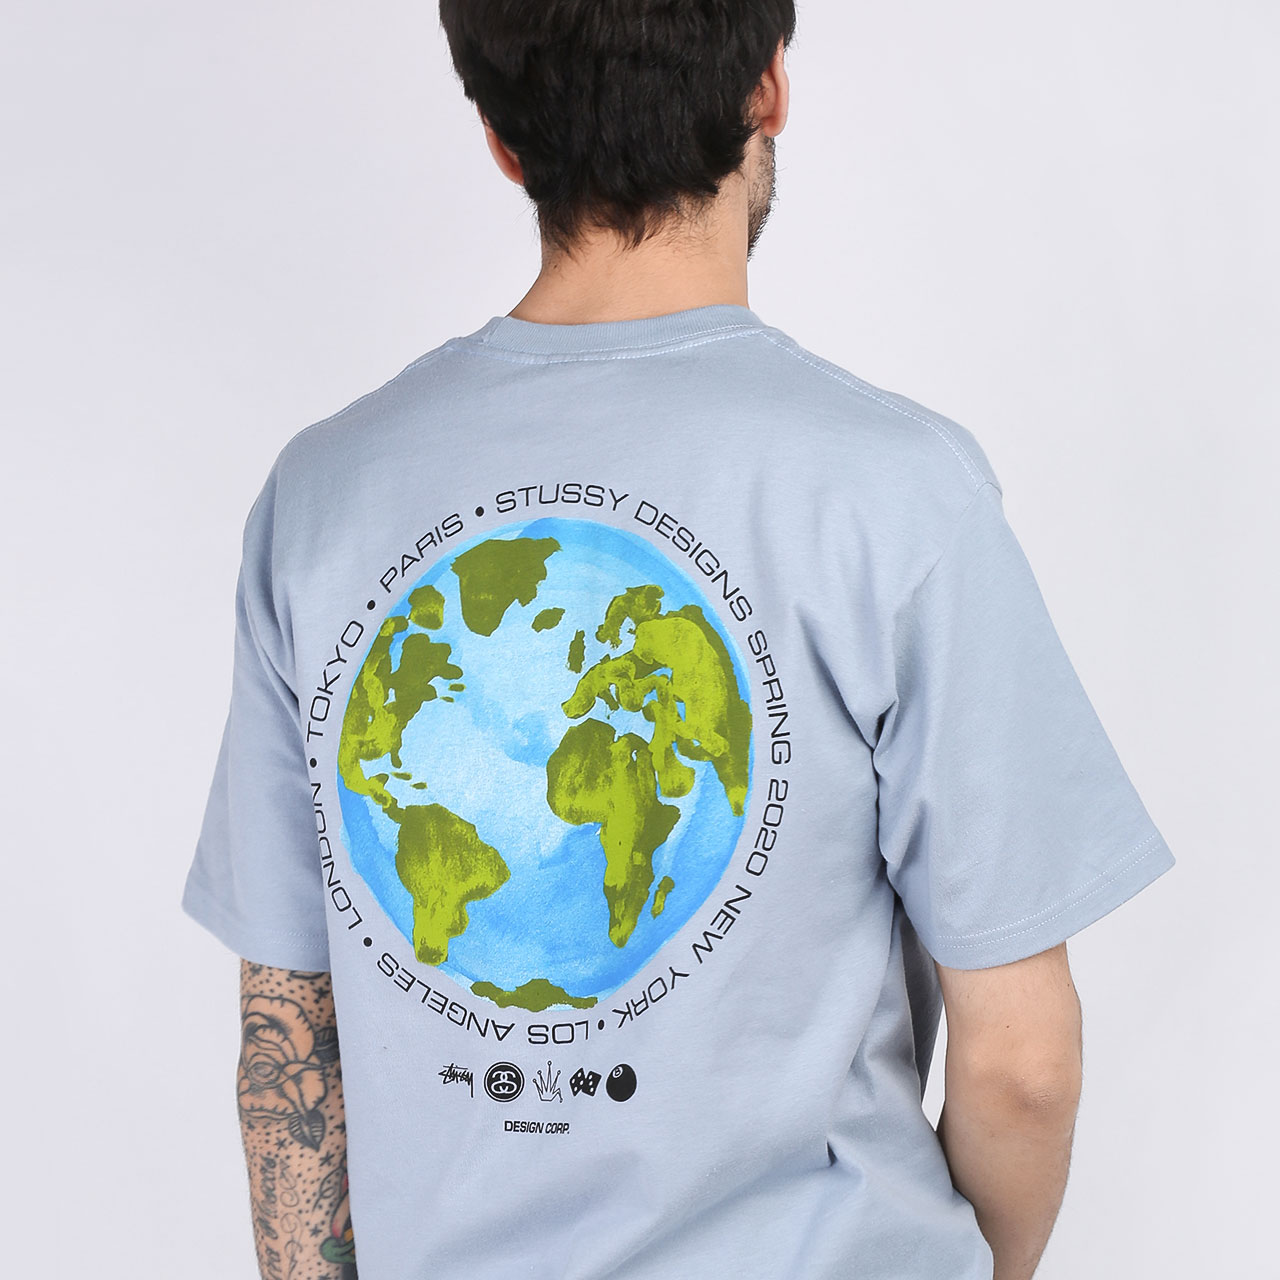 мужская голубая футболка Stussy T-SHIRT GLOBAL DESIGN 1904506-slate - цена, описание, фото 3